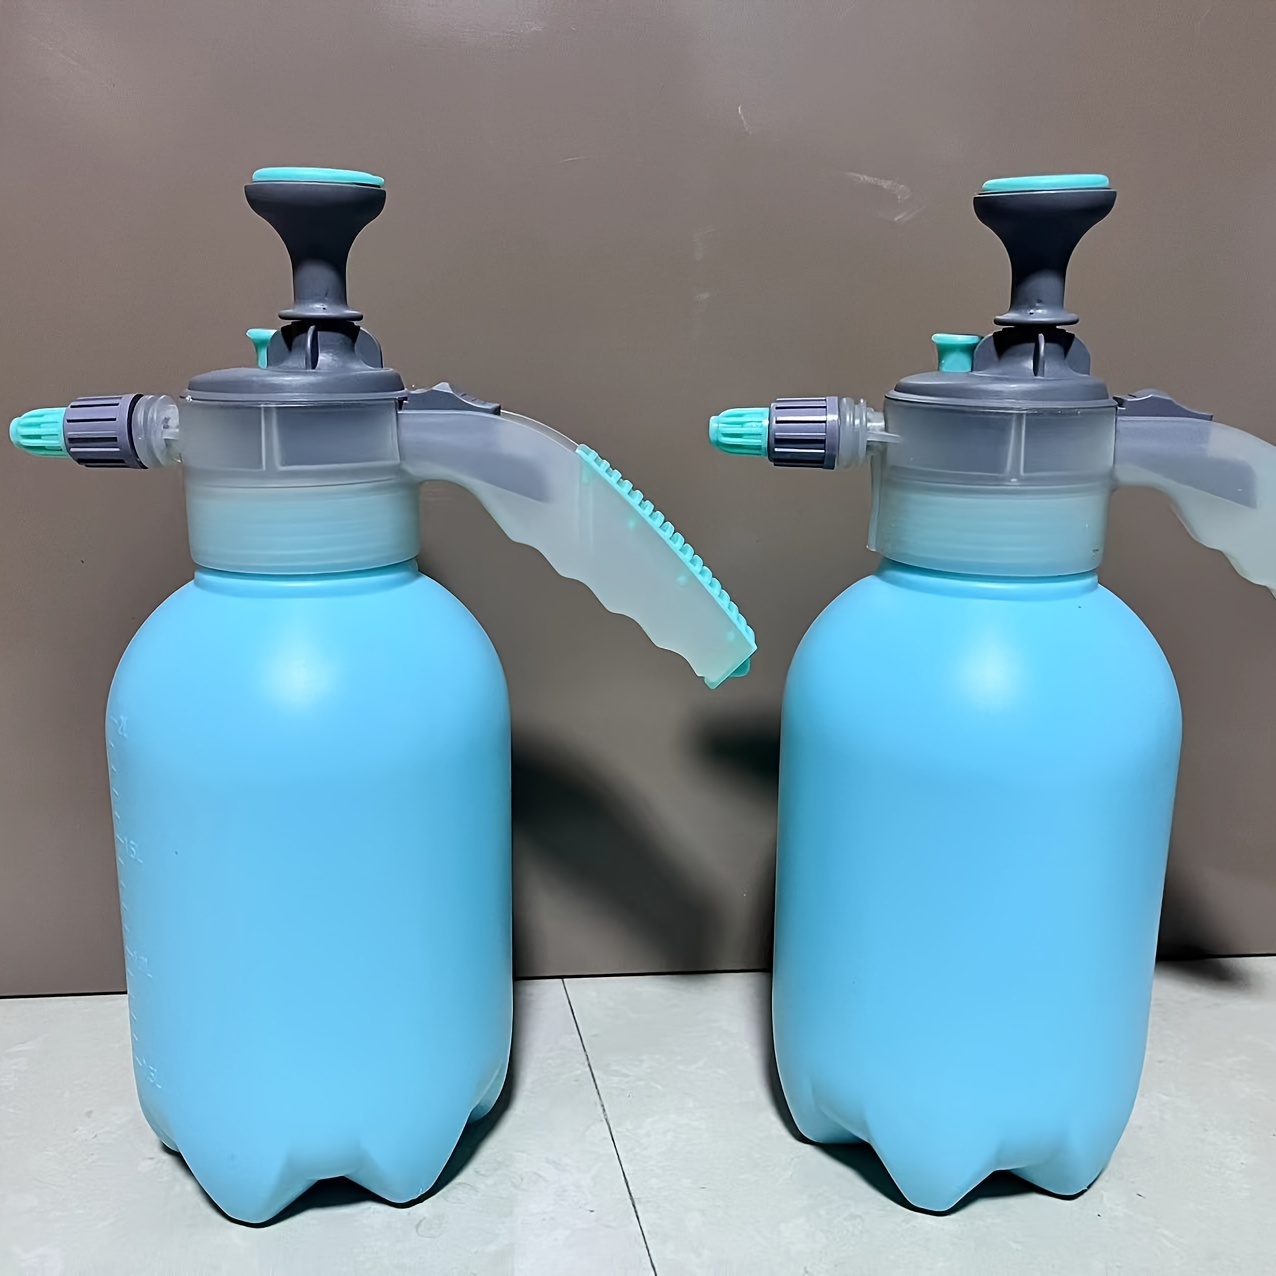 Pump Pressure Water Sprayer Bottle